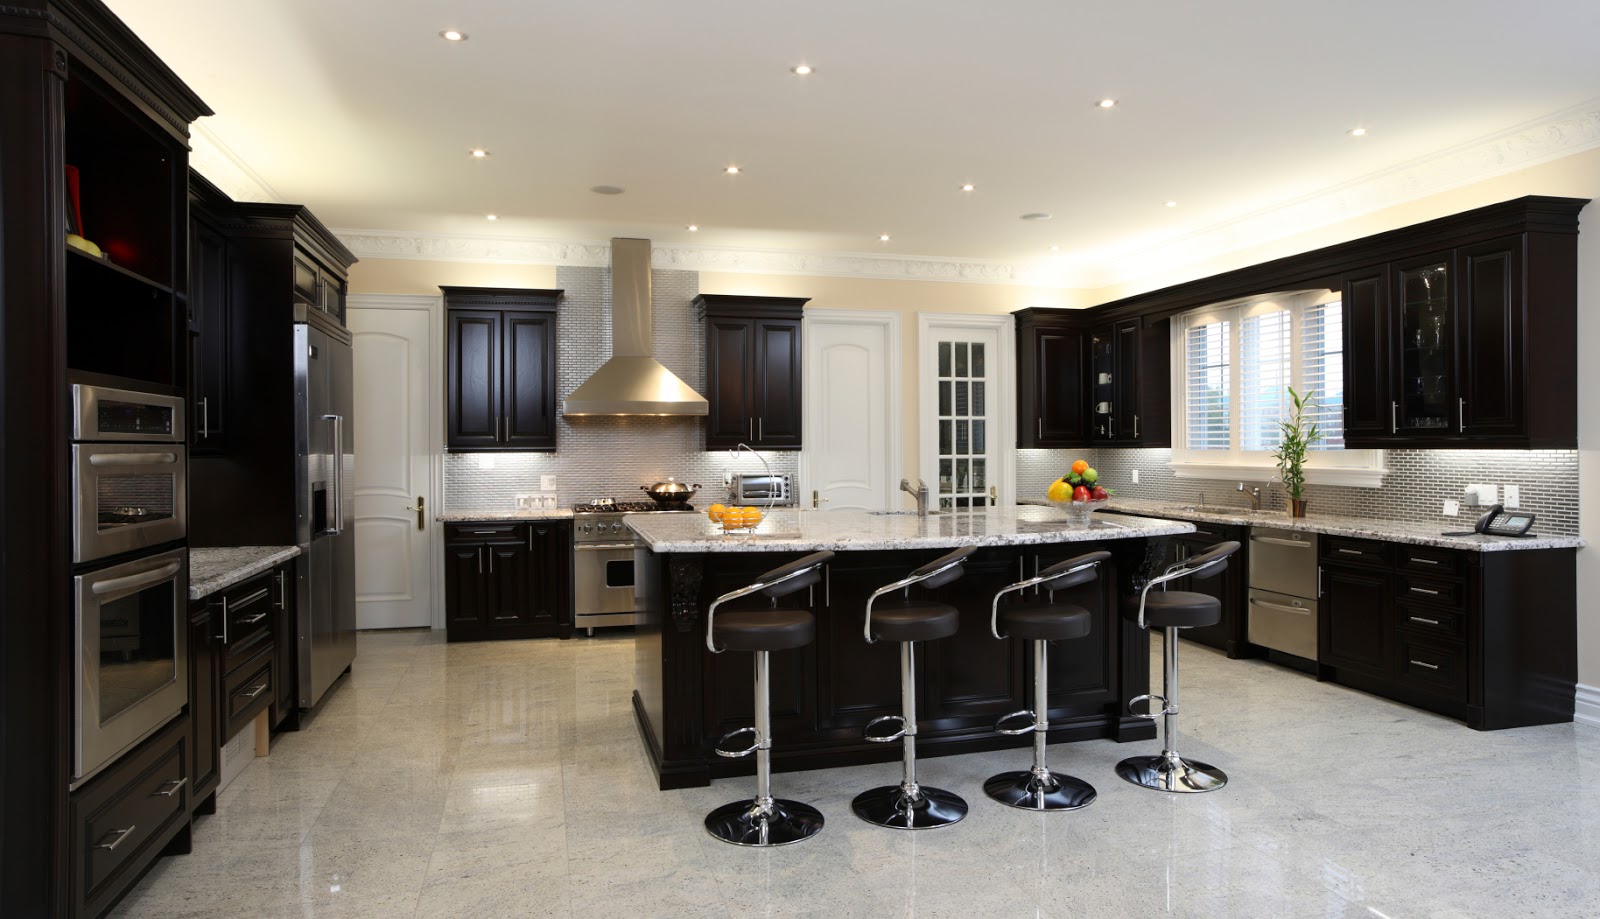 Desain Interior Dapur Dengan Perabotan Kayu Dominan Warna Gelap